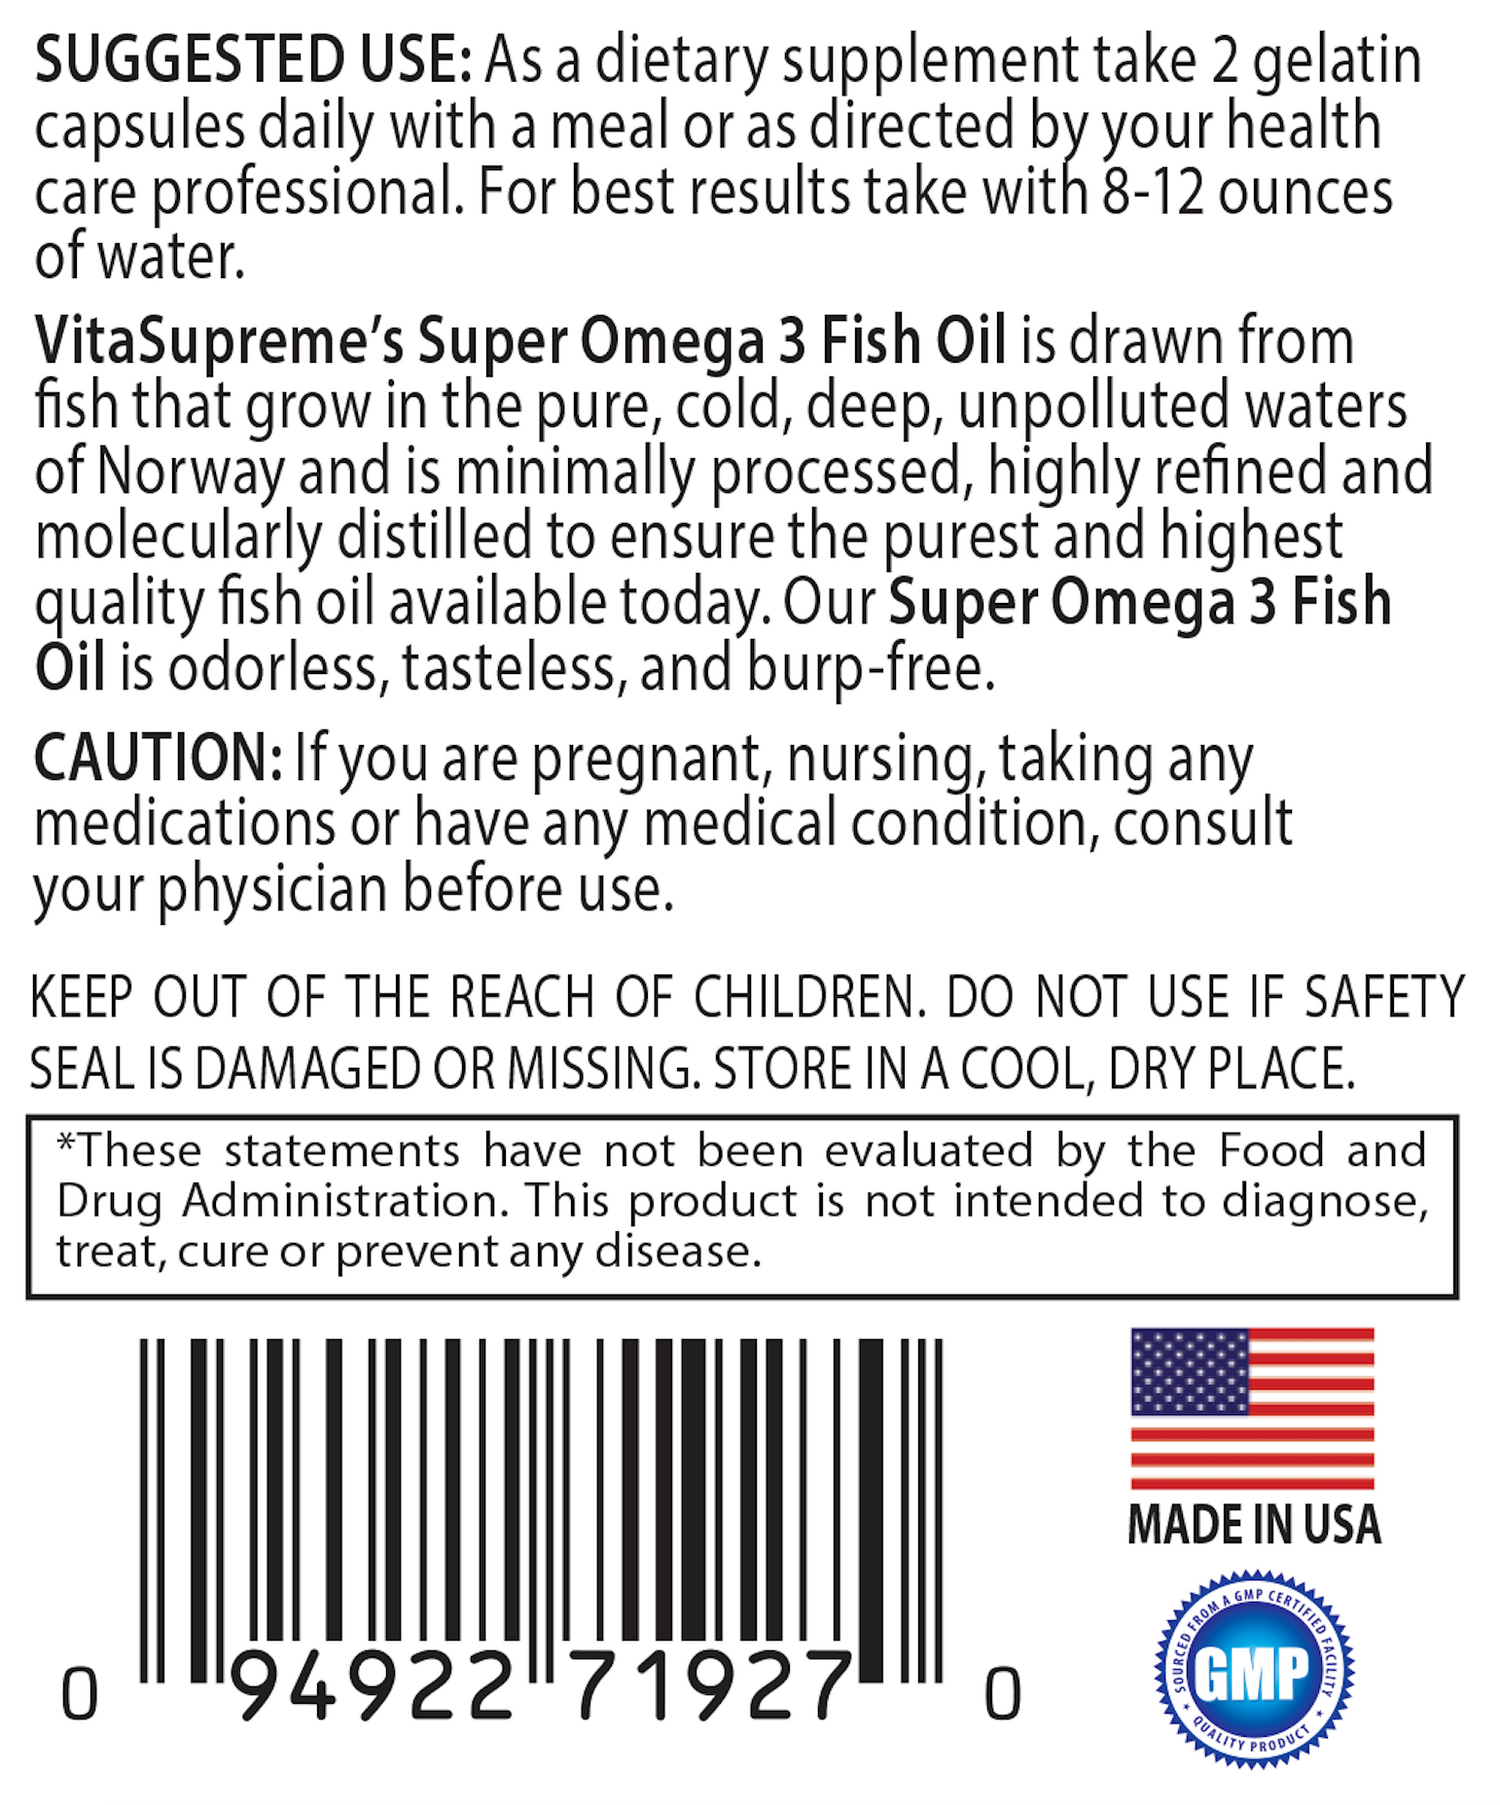 Super Omega 3 Fish Oil Suggested Use